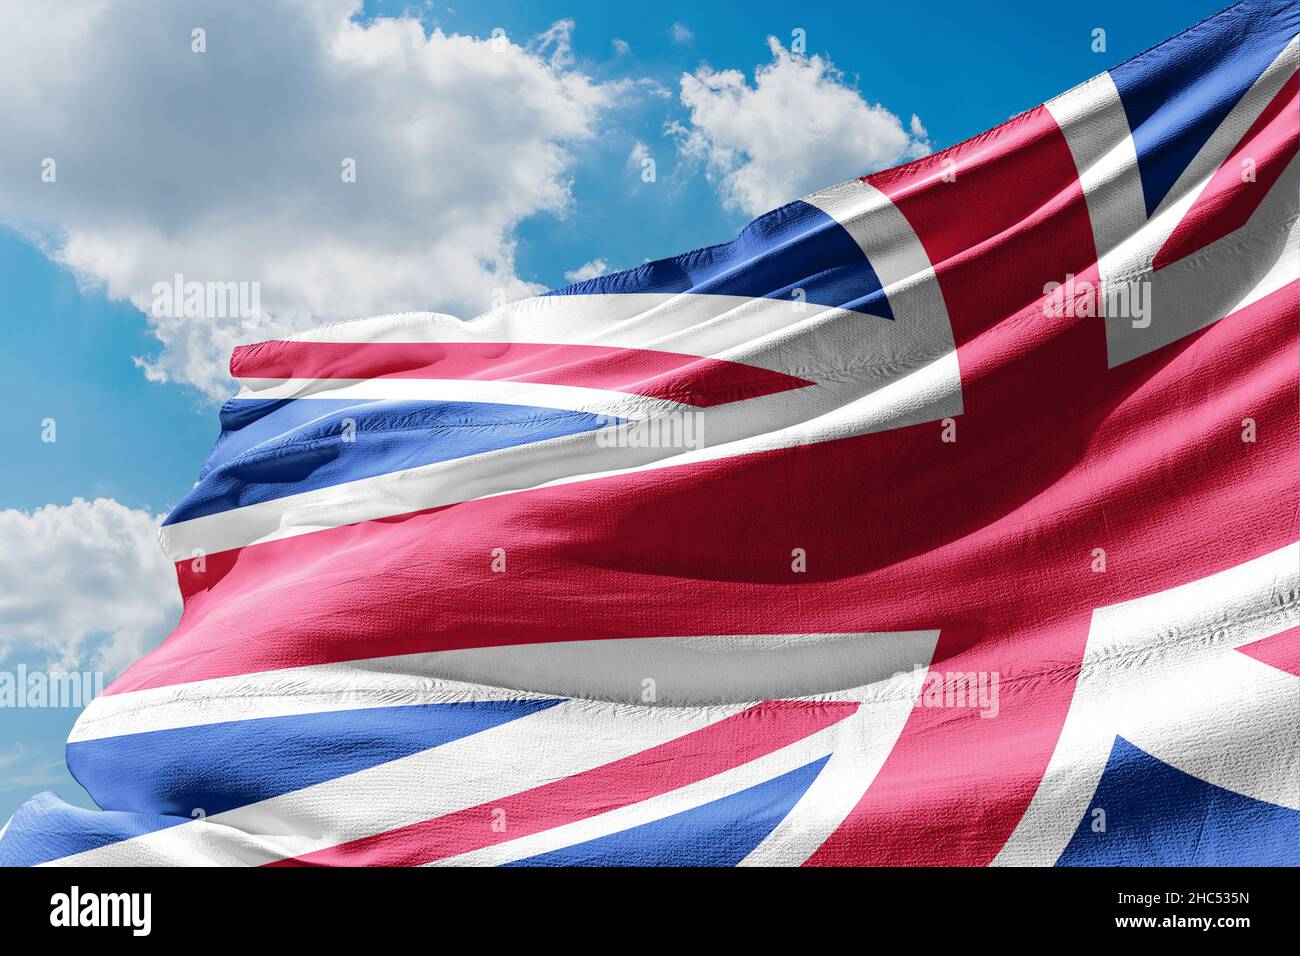 Union Jack, Union Flag, British flag, UK flag Stock Photo